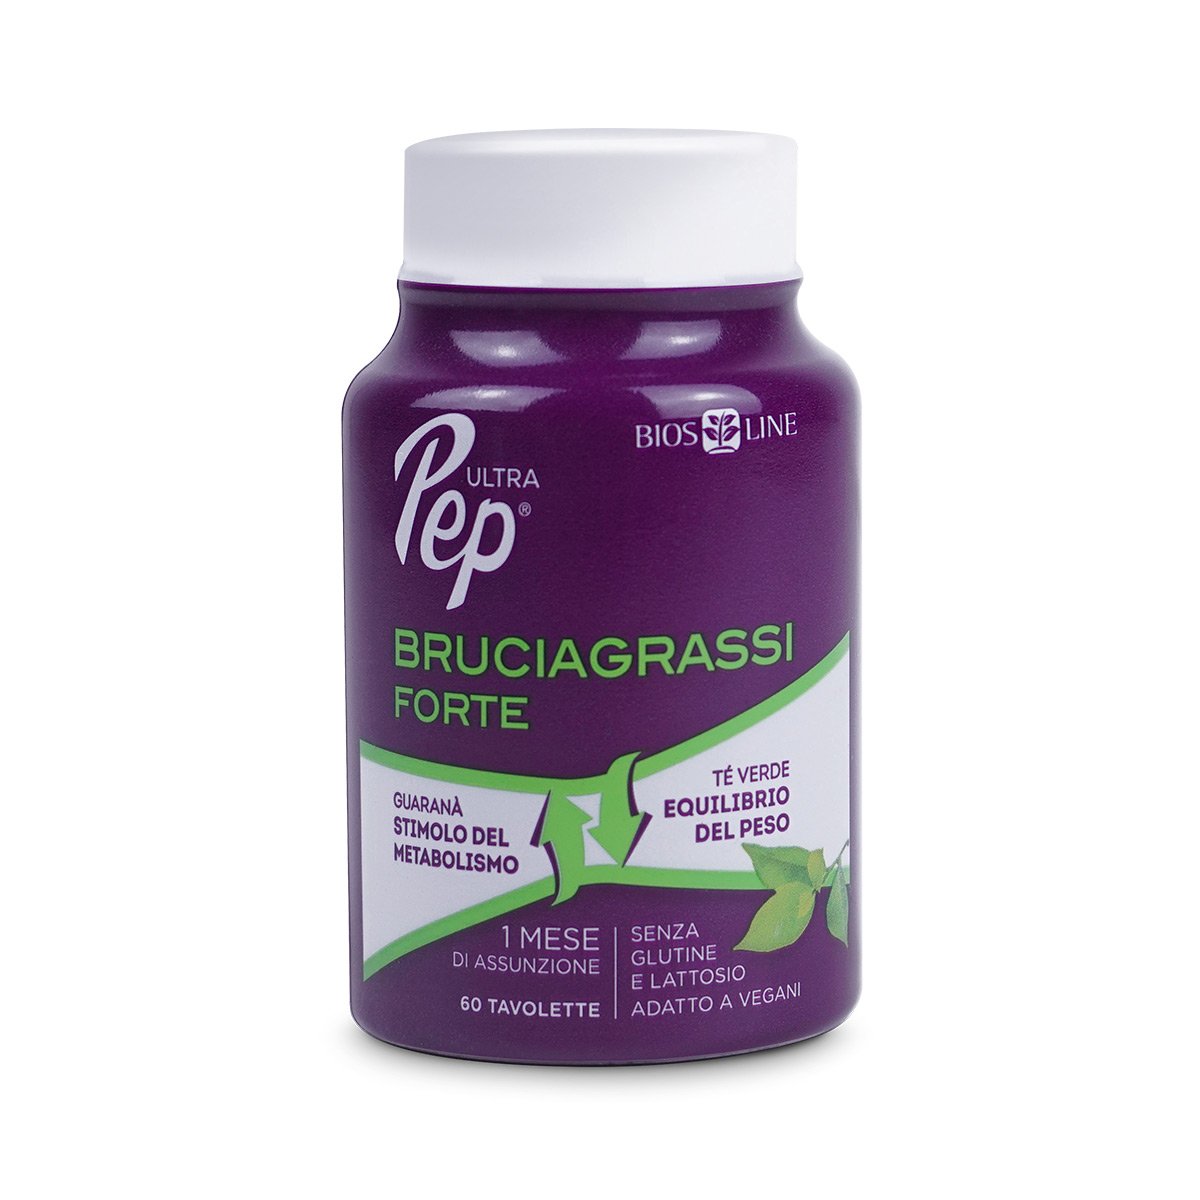 Ultra Pep® Tavolette Bruciagrassi FORTE - BIOS LINE Stimola il metabolismo svolge un'azione tonica e di sostegno e favorisce la perdita di peso. 60 tavolette